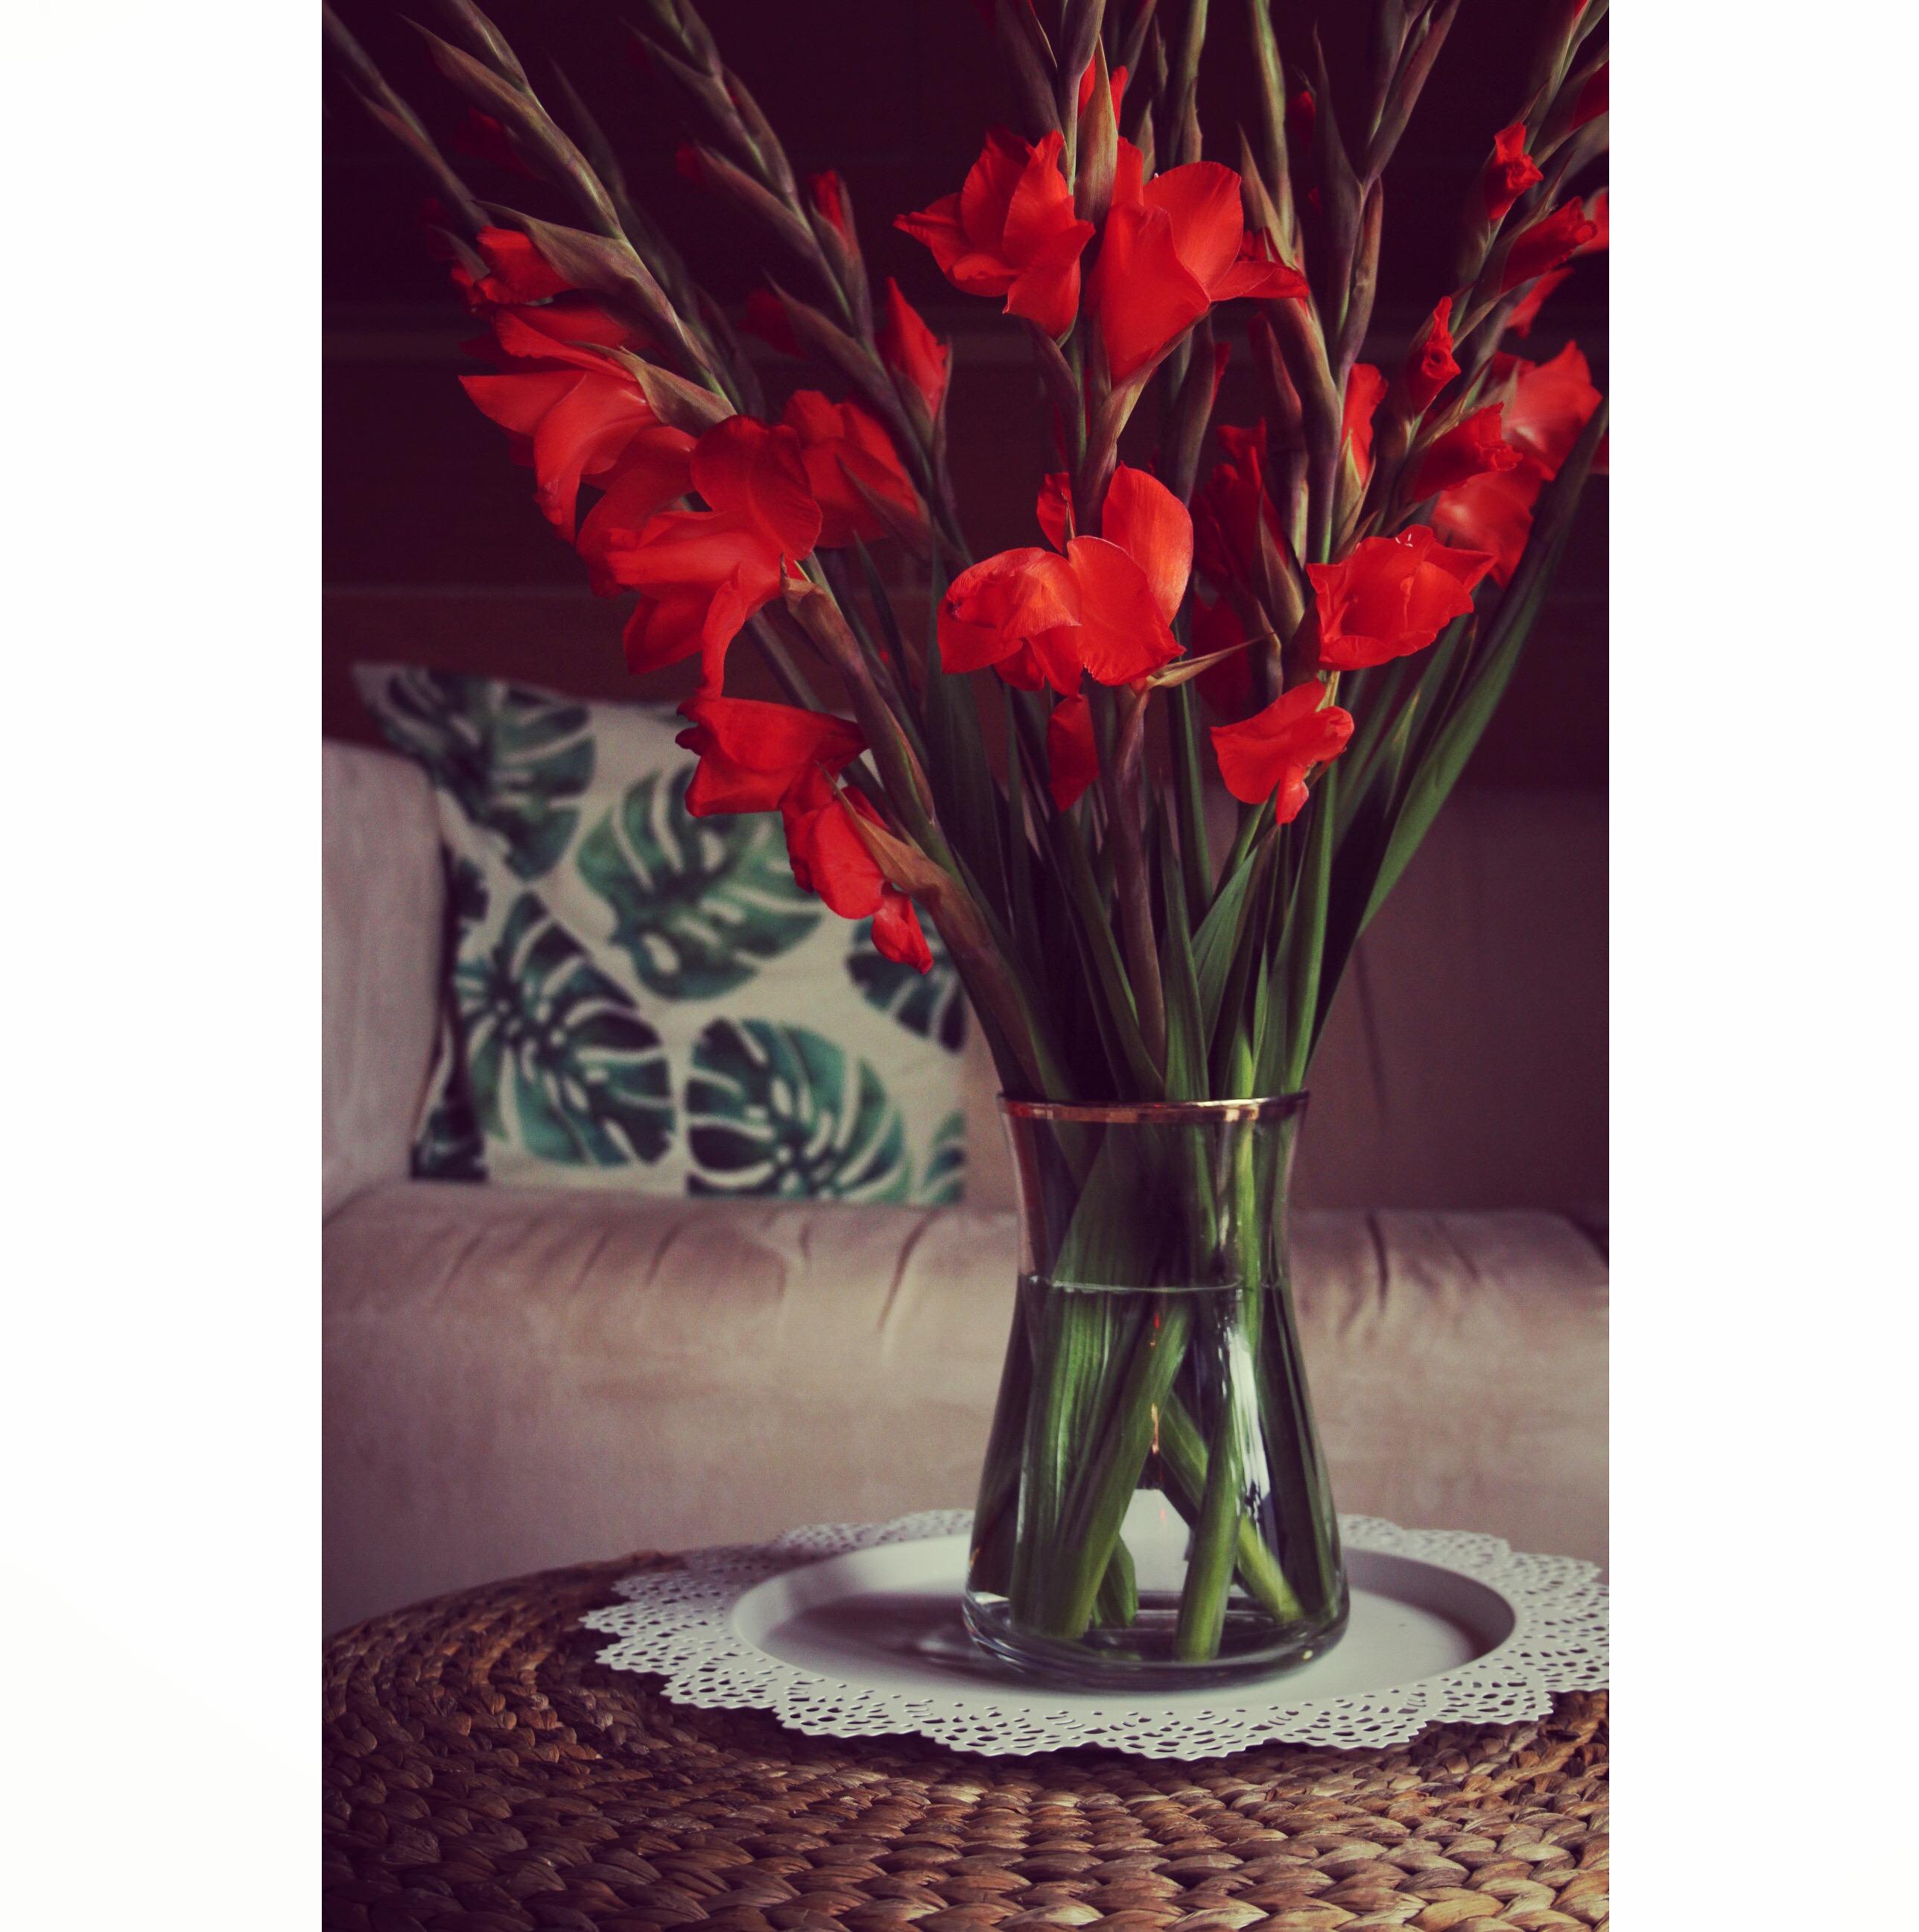 nicht ohne meine Gladiolen. #couchliebt #blumen #gladiolen #living #hygge #lagom #frauenbrauchendeko